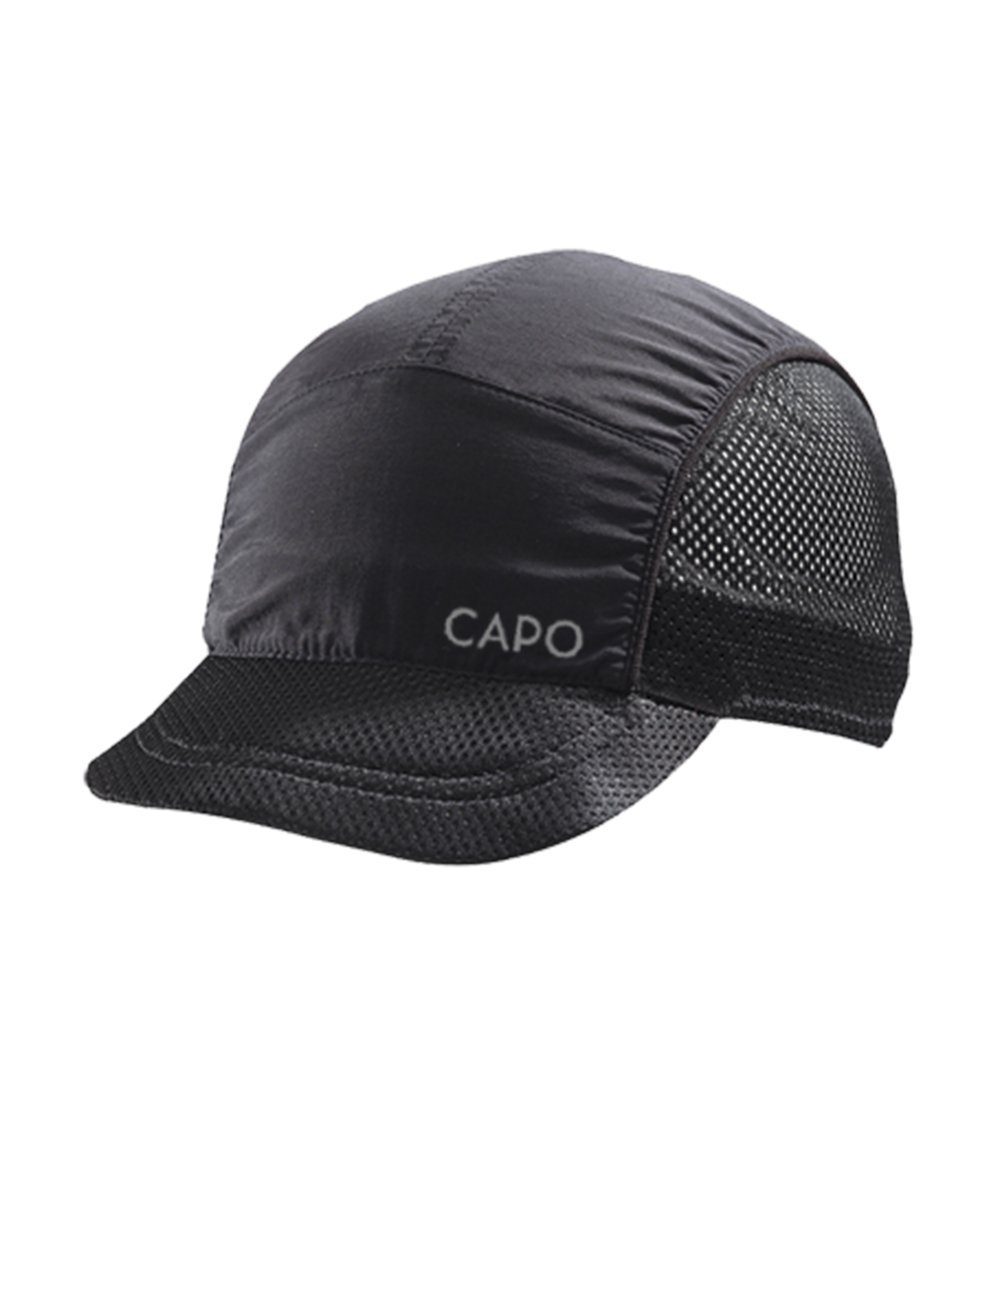 CAPO Baseball Cap Softcap, ultraleicht seitliche Netzeinsätze, Refle Made in Europe black